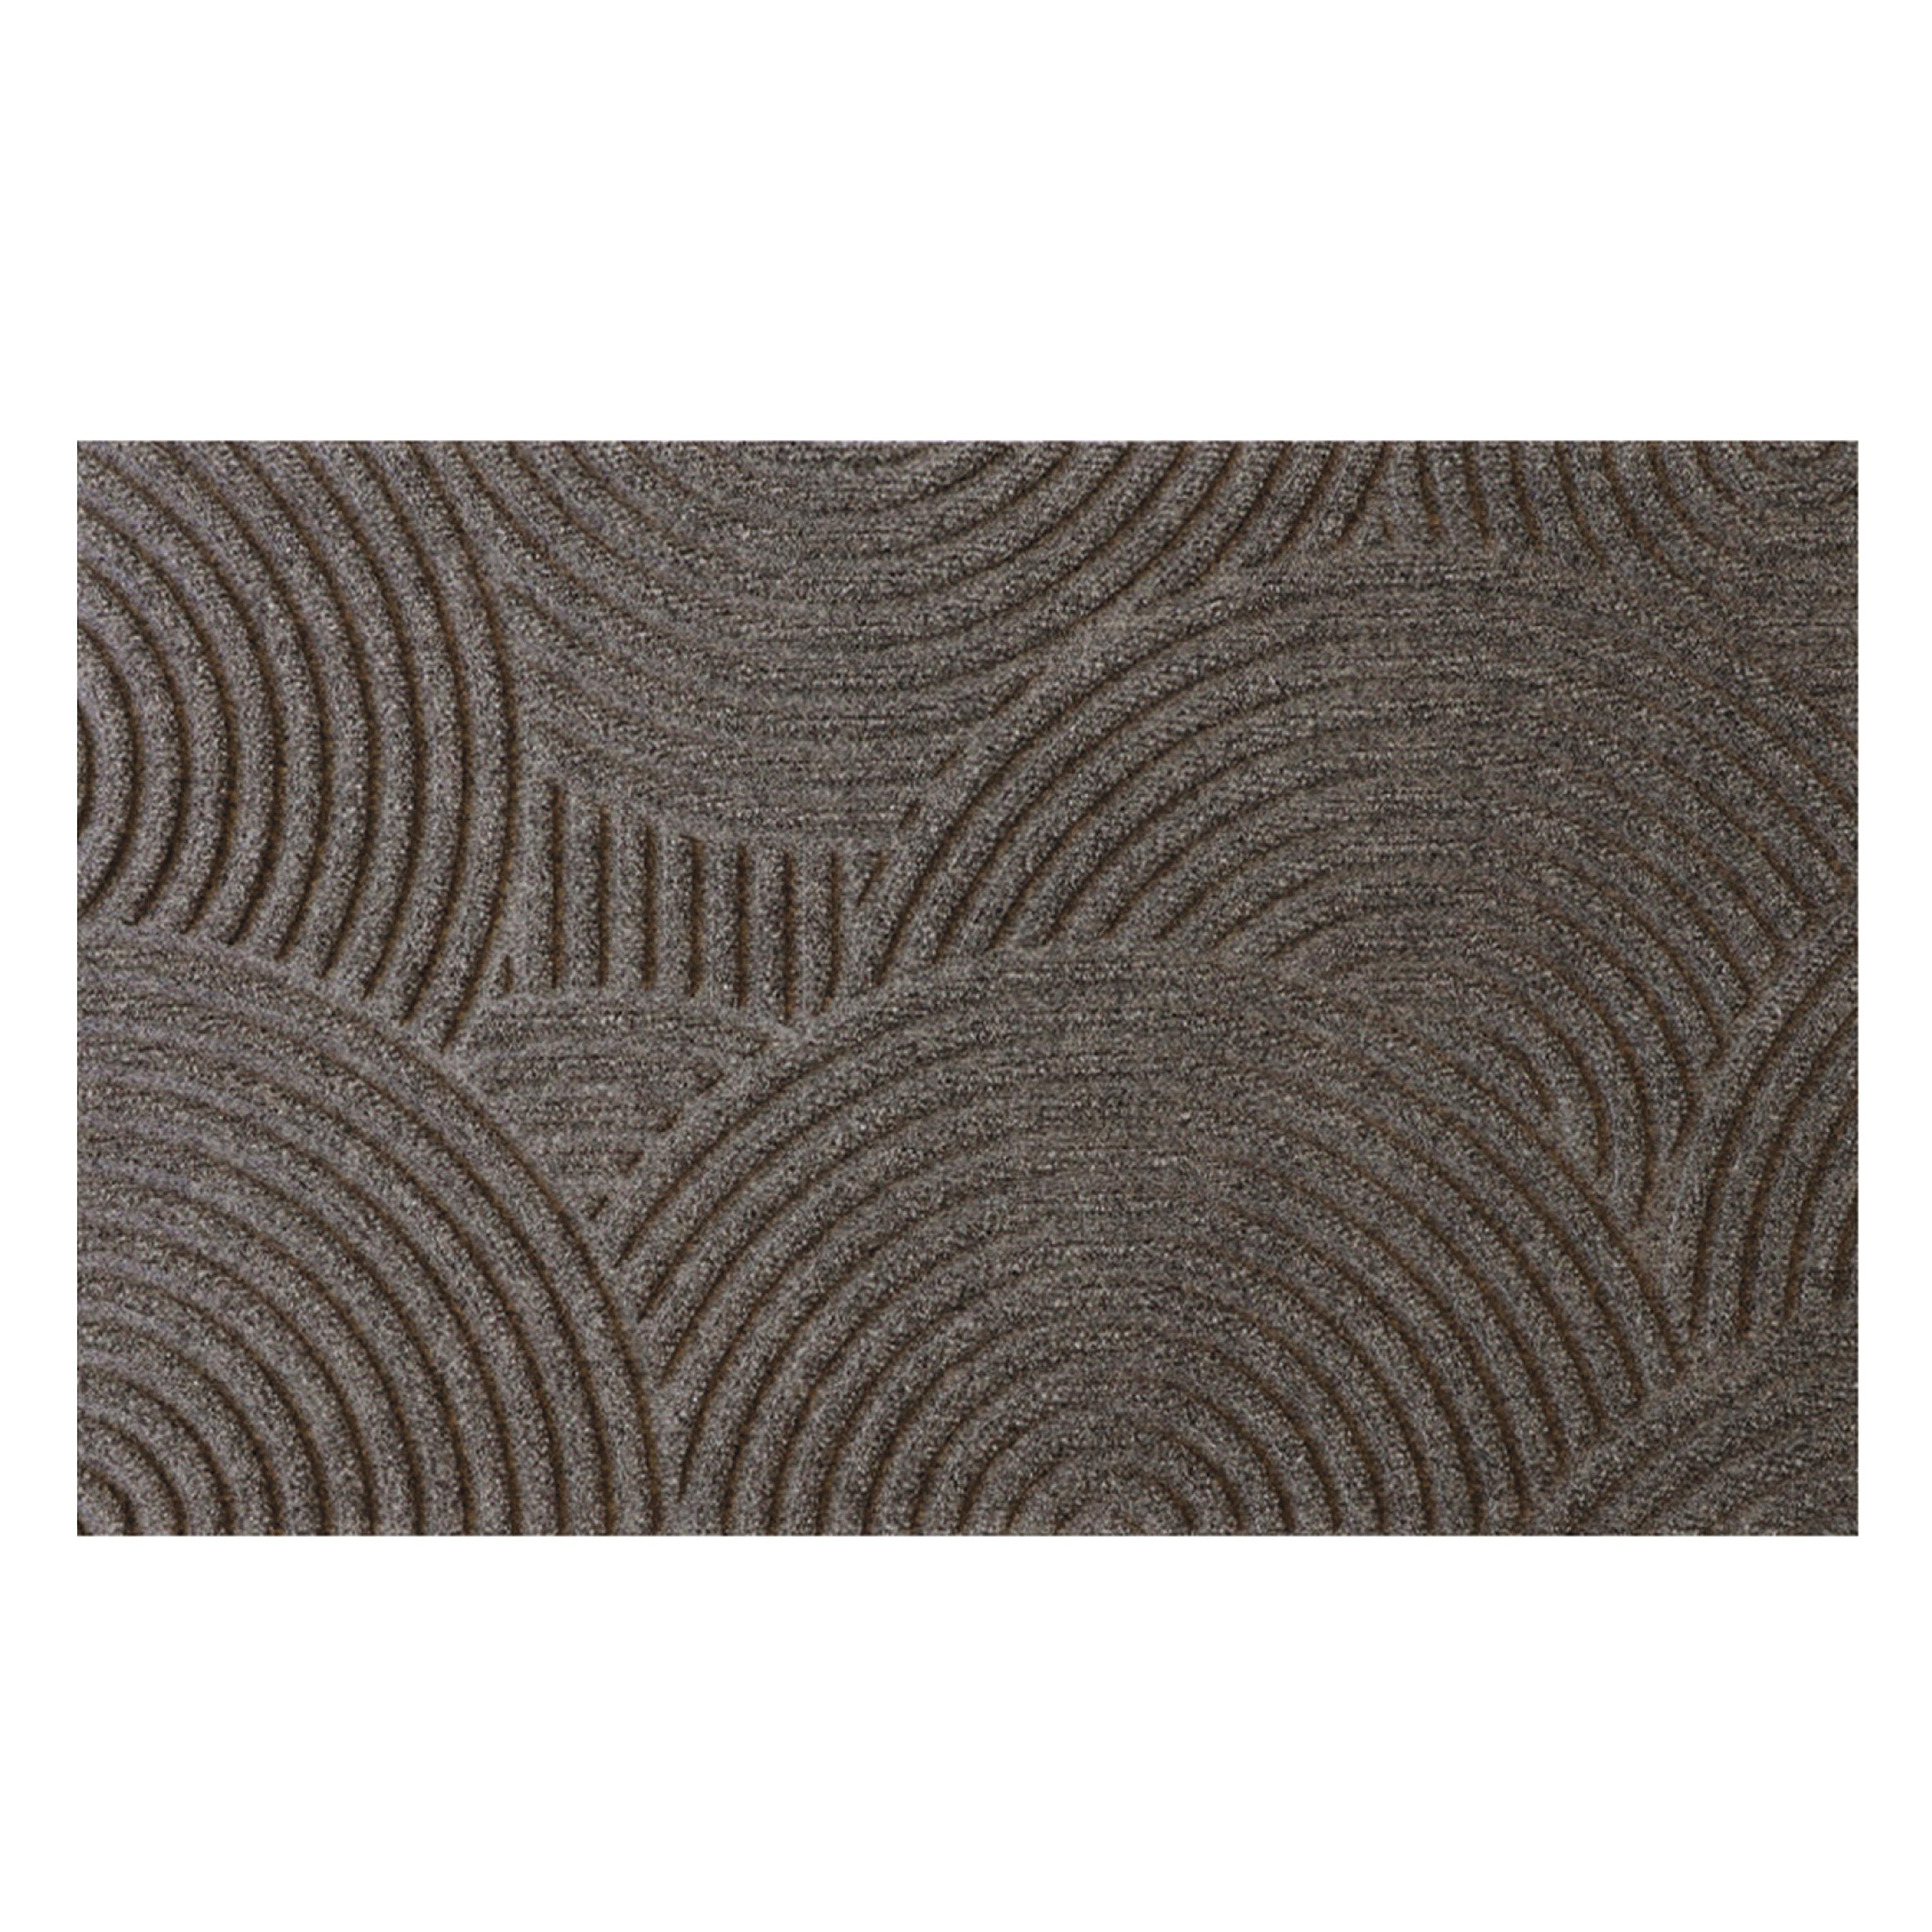 Waterhog Luxe Sand Doormat, 35"L x 21.5"W swatch image